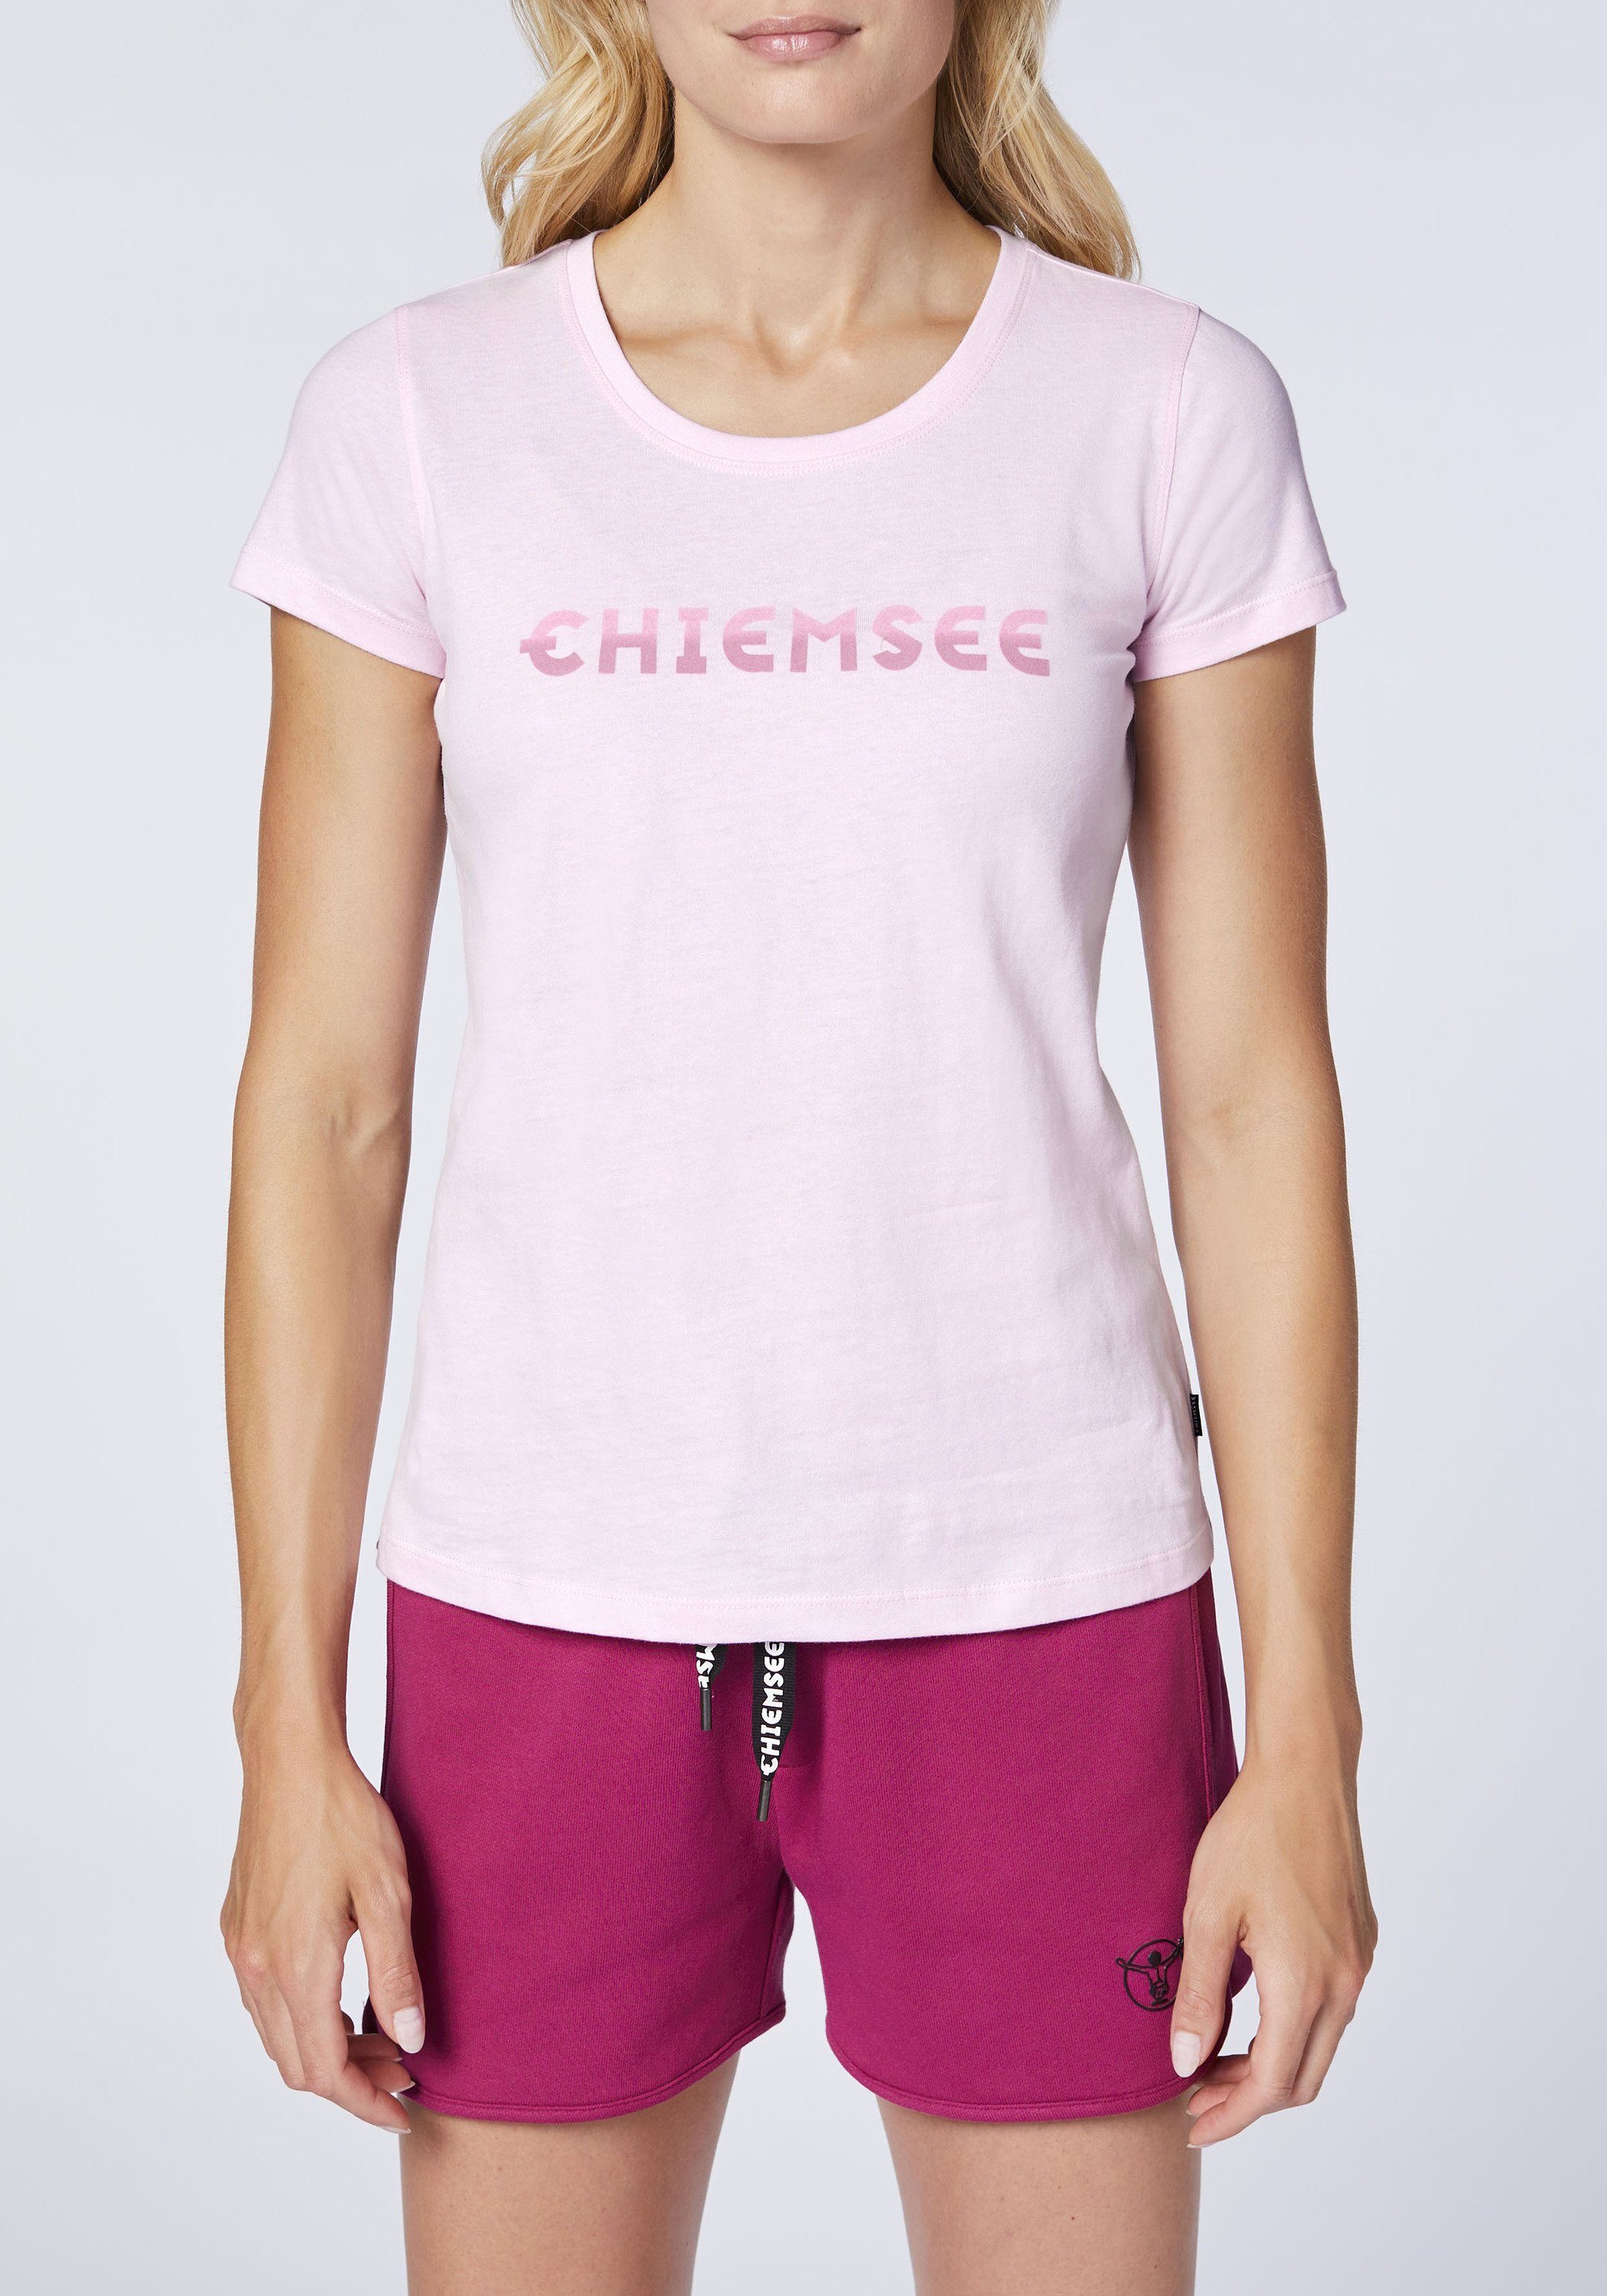 Chiemsee Print-Shirt T-Shirt mit Farbverlauf-Optik Logo Pink 1 Lady in